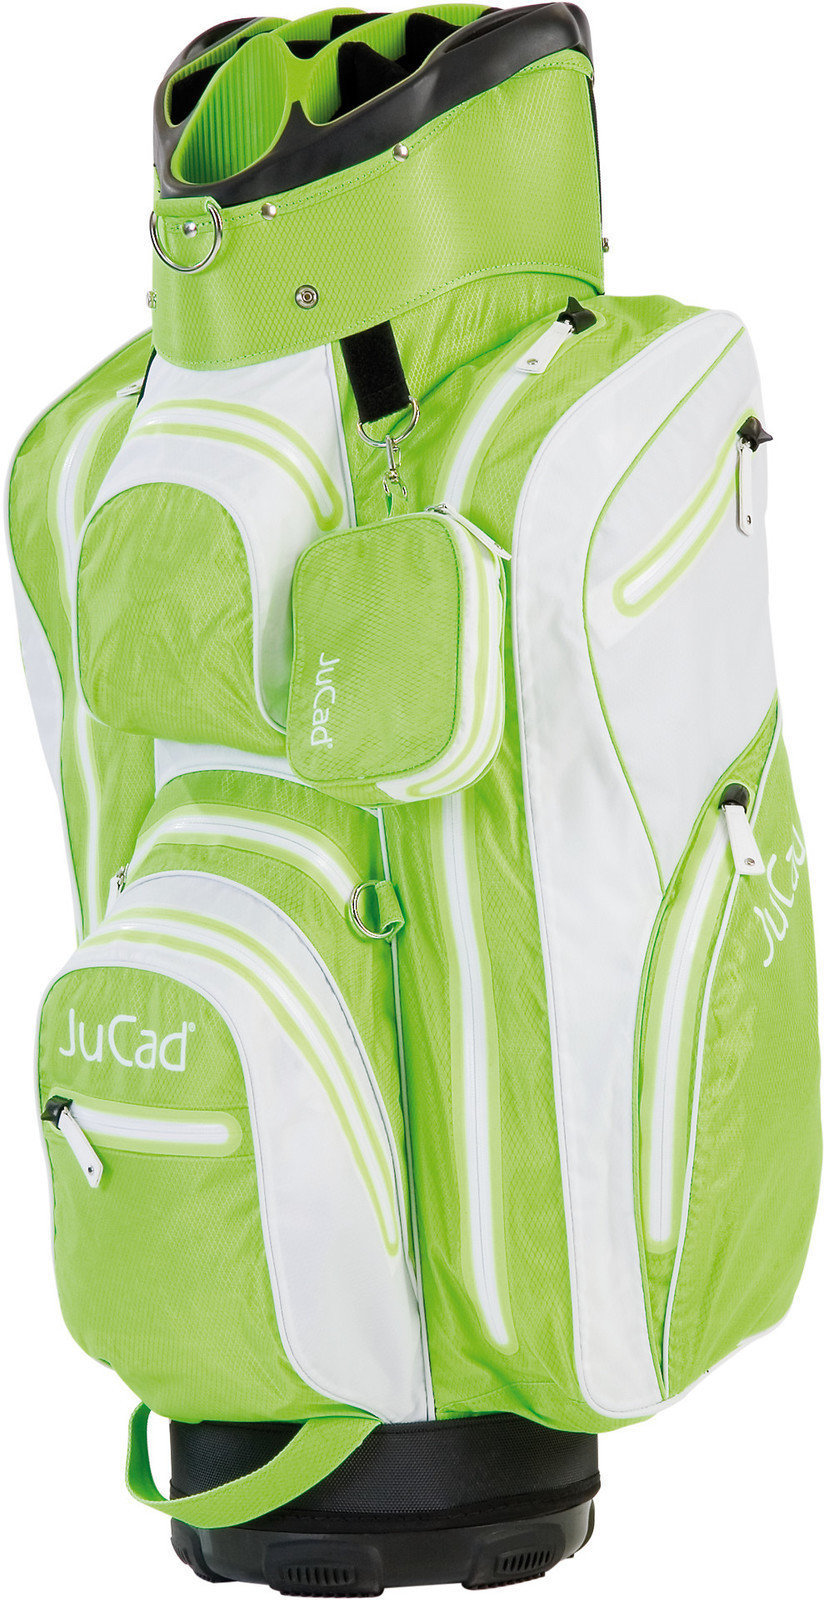 Golflaukku Jucad Aquastop White/Green Golflaukku